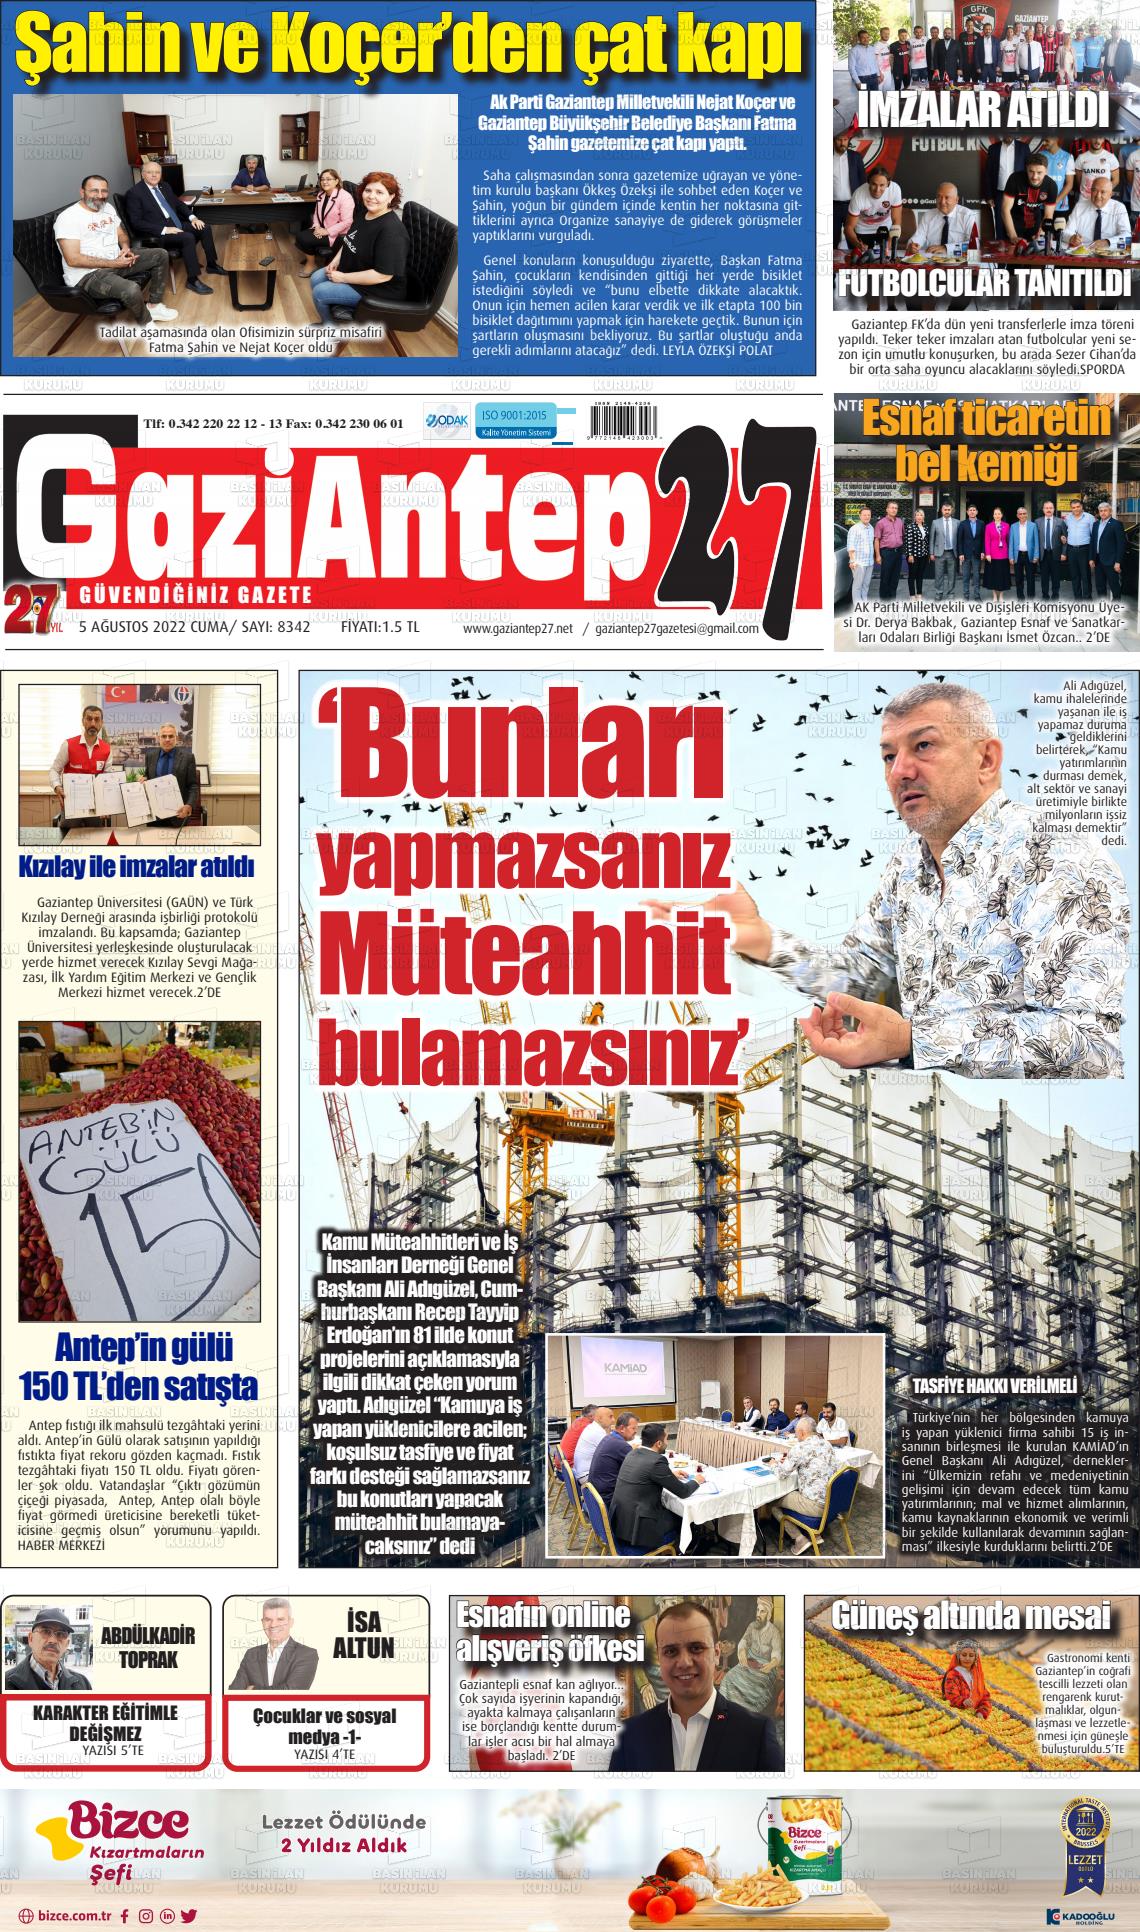 05 Ağustos 2022 Gaziantep 27 Gazete Manşeti